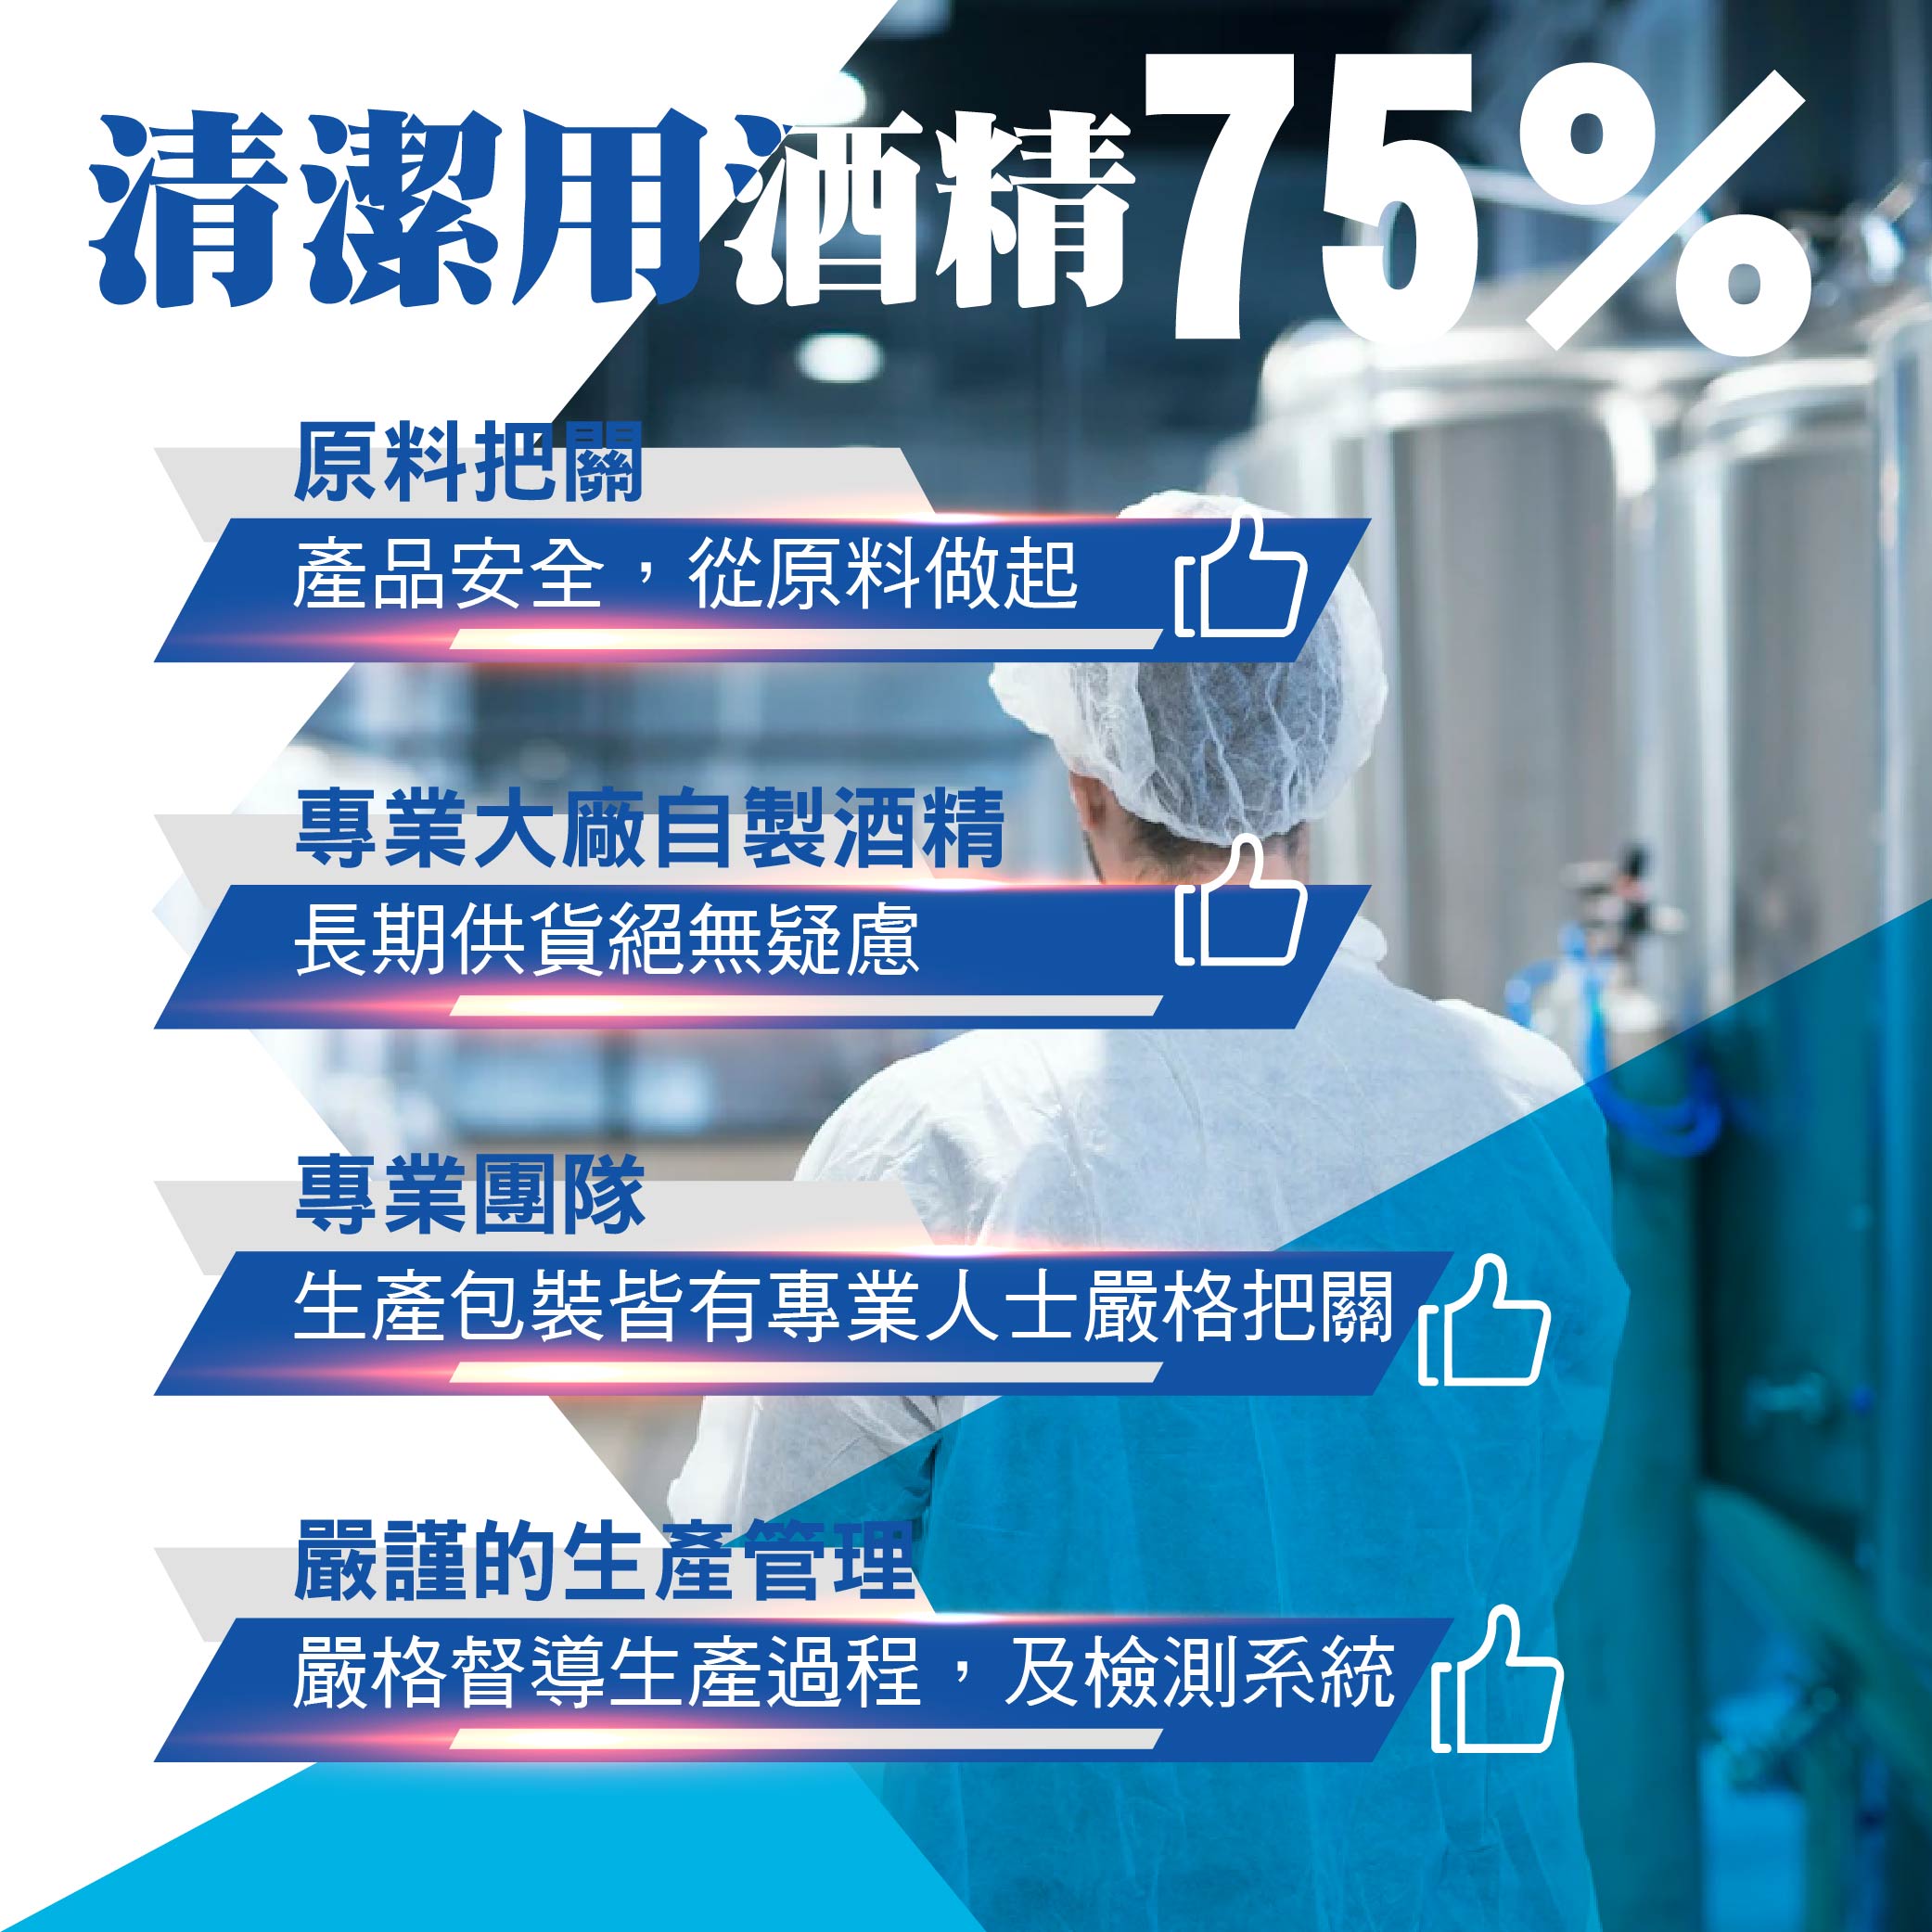 【宸鼎】75%防疫清潔用酒精(60ML/500ML/4L/20L)隨身瓶、大容量